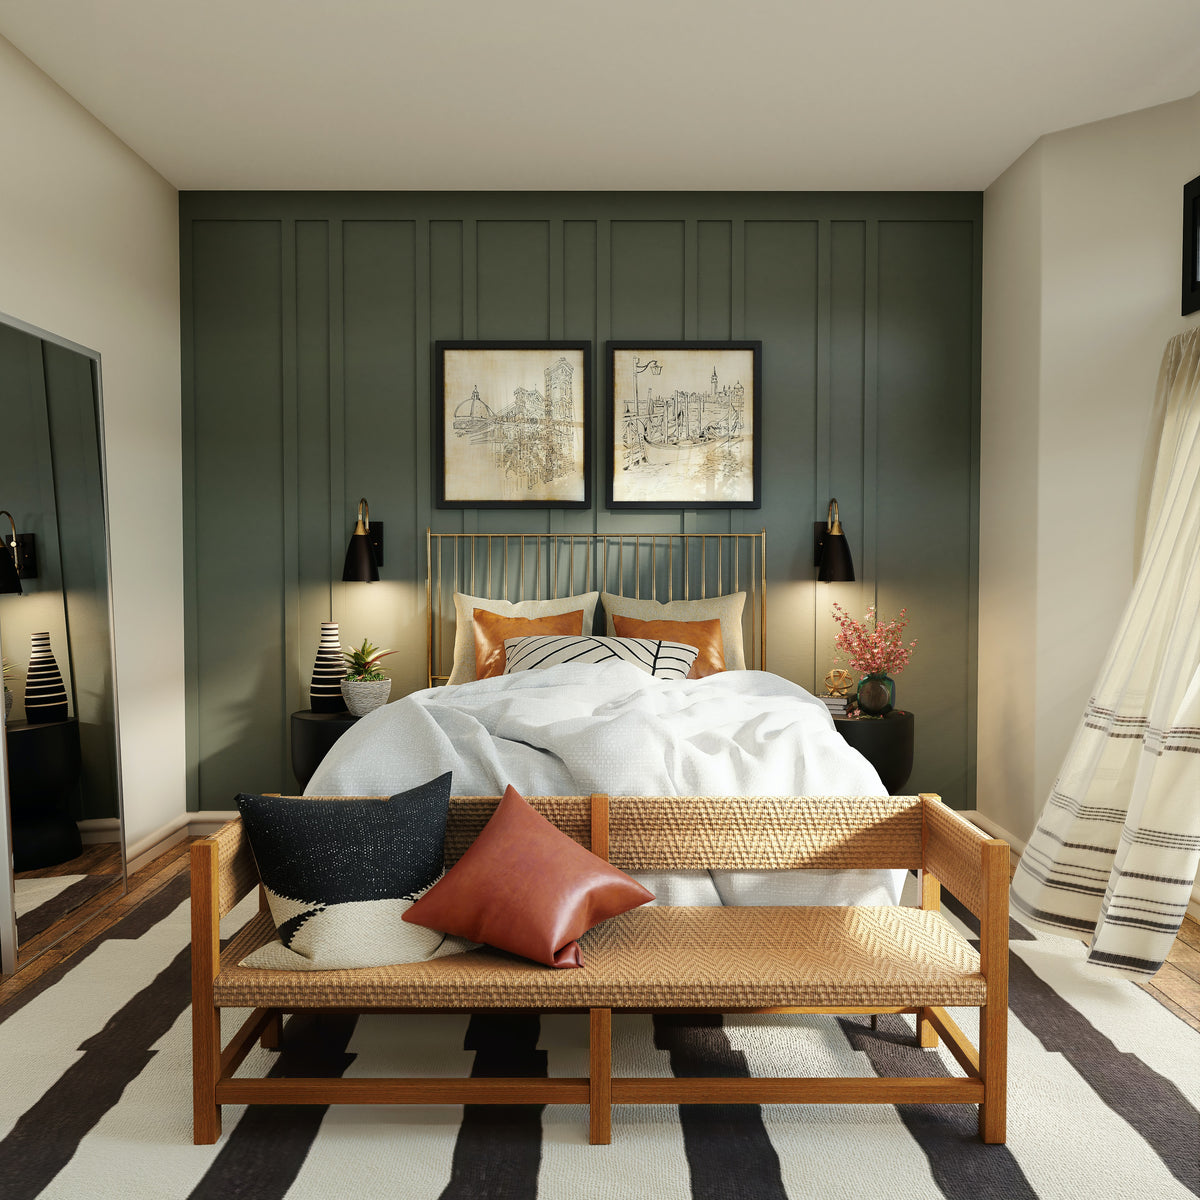 Das Bild zeigt ein Bett vor einer dunkelgrünen Wand mit terrakotta-farbenen Kissen.